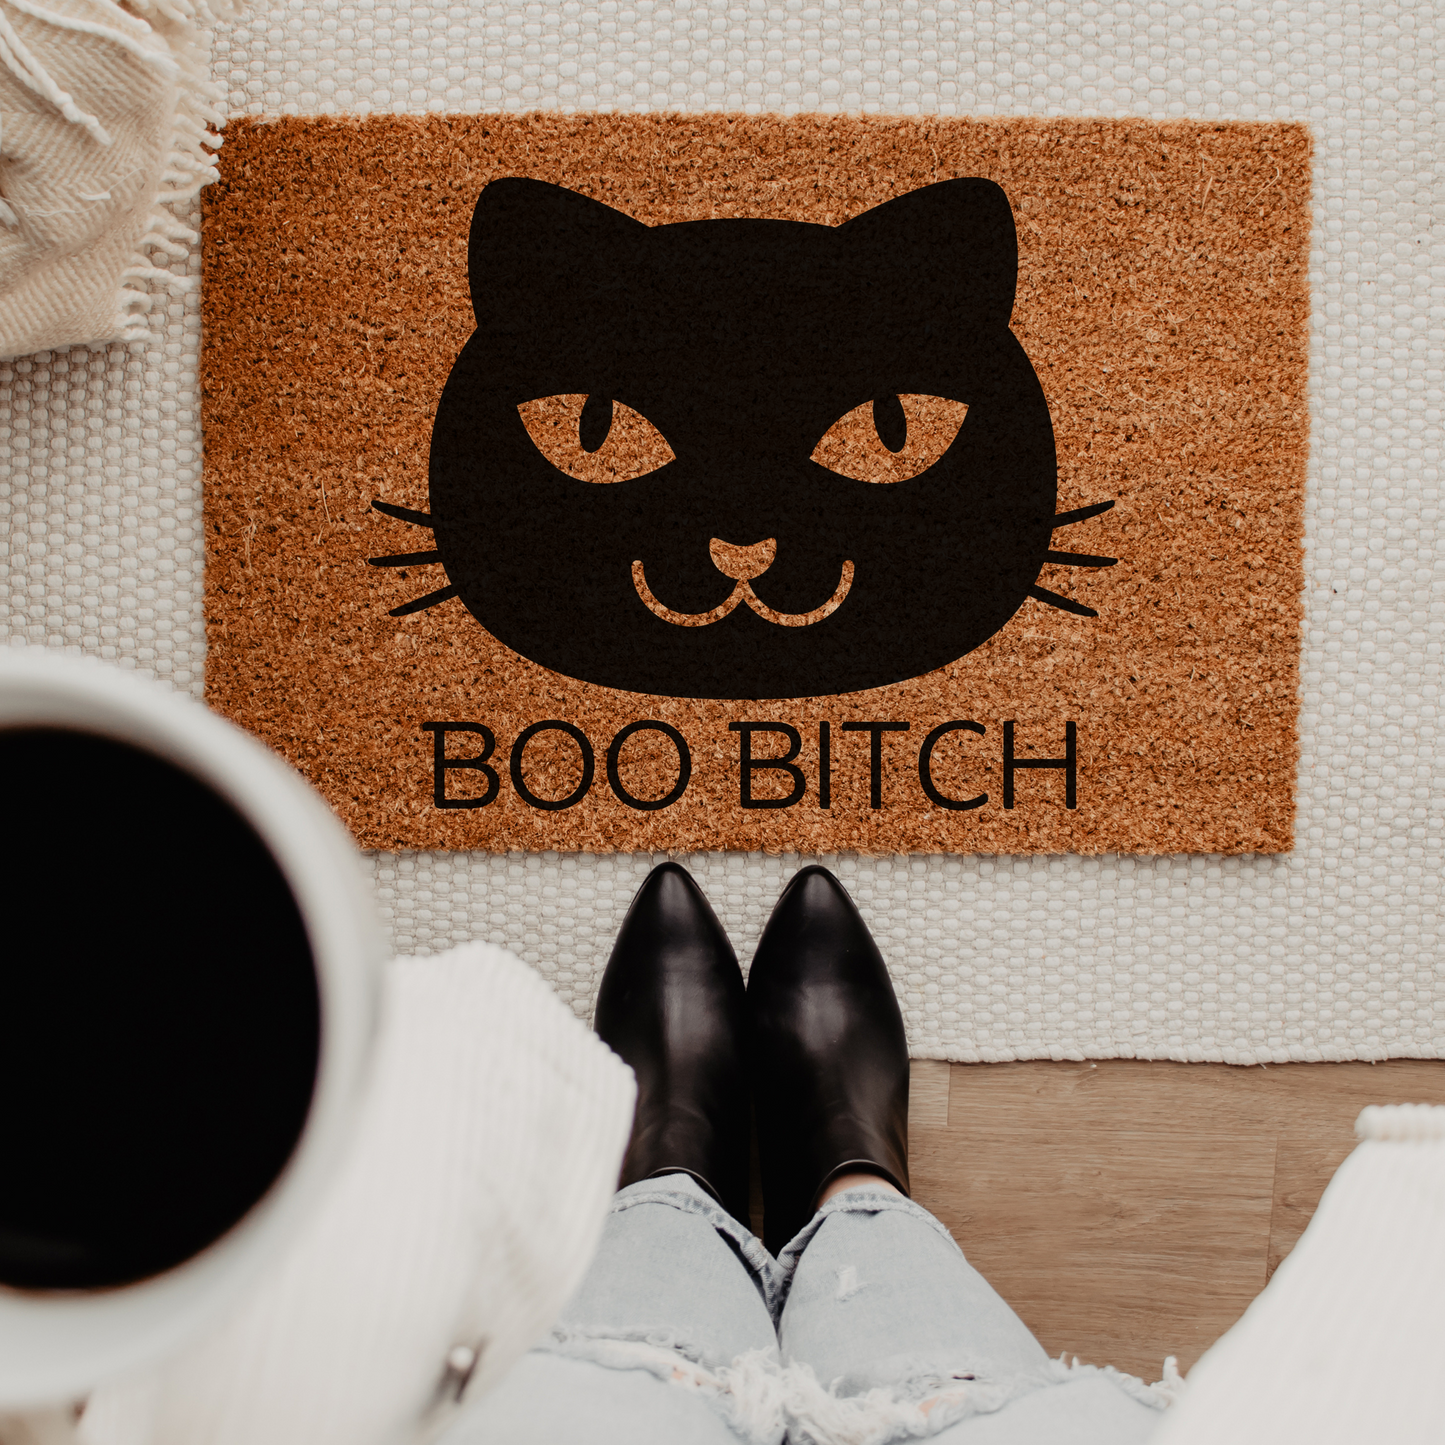 Halloween Doormat Funny Black Cat Welcome Door Mat